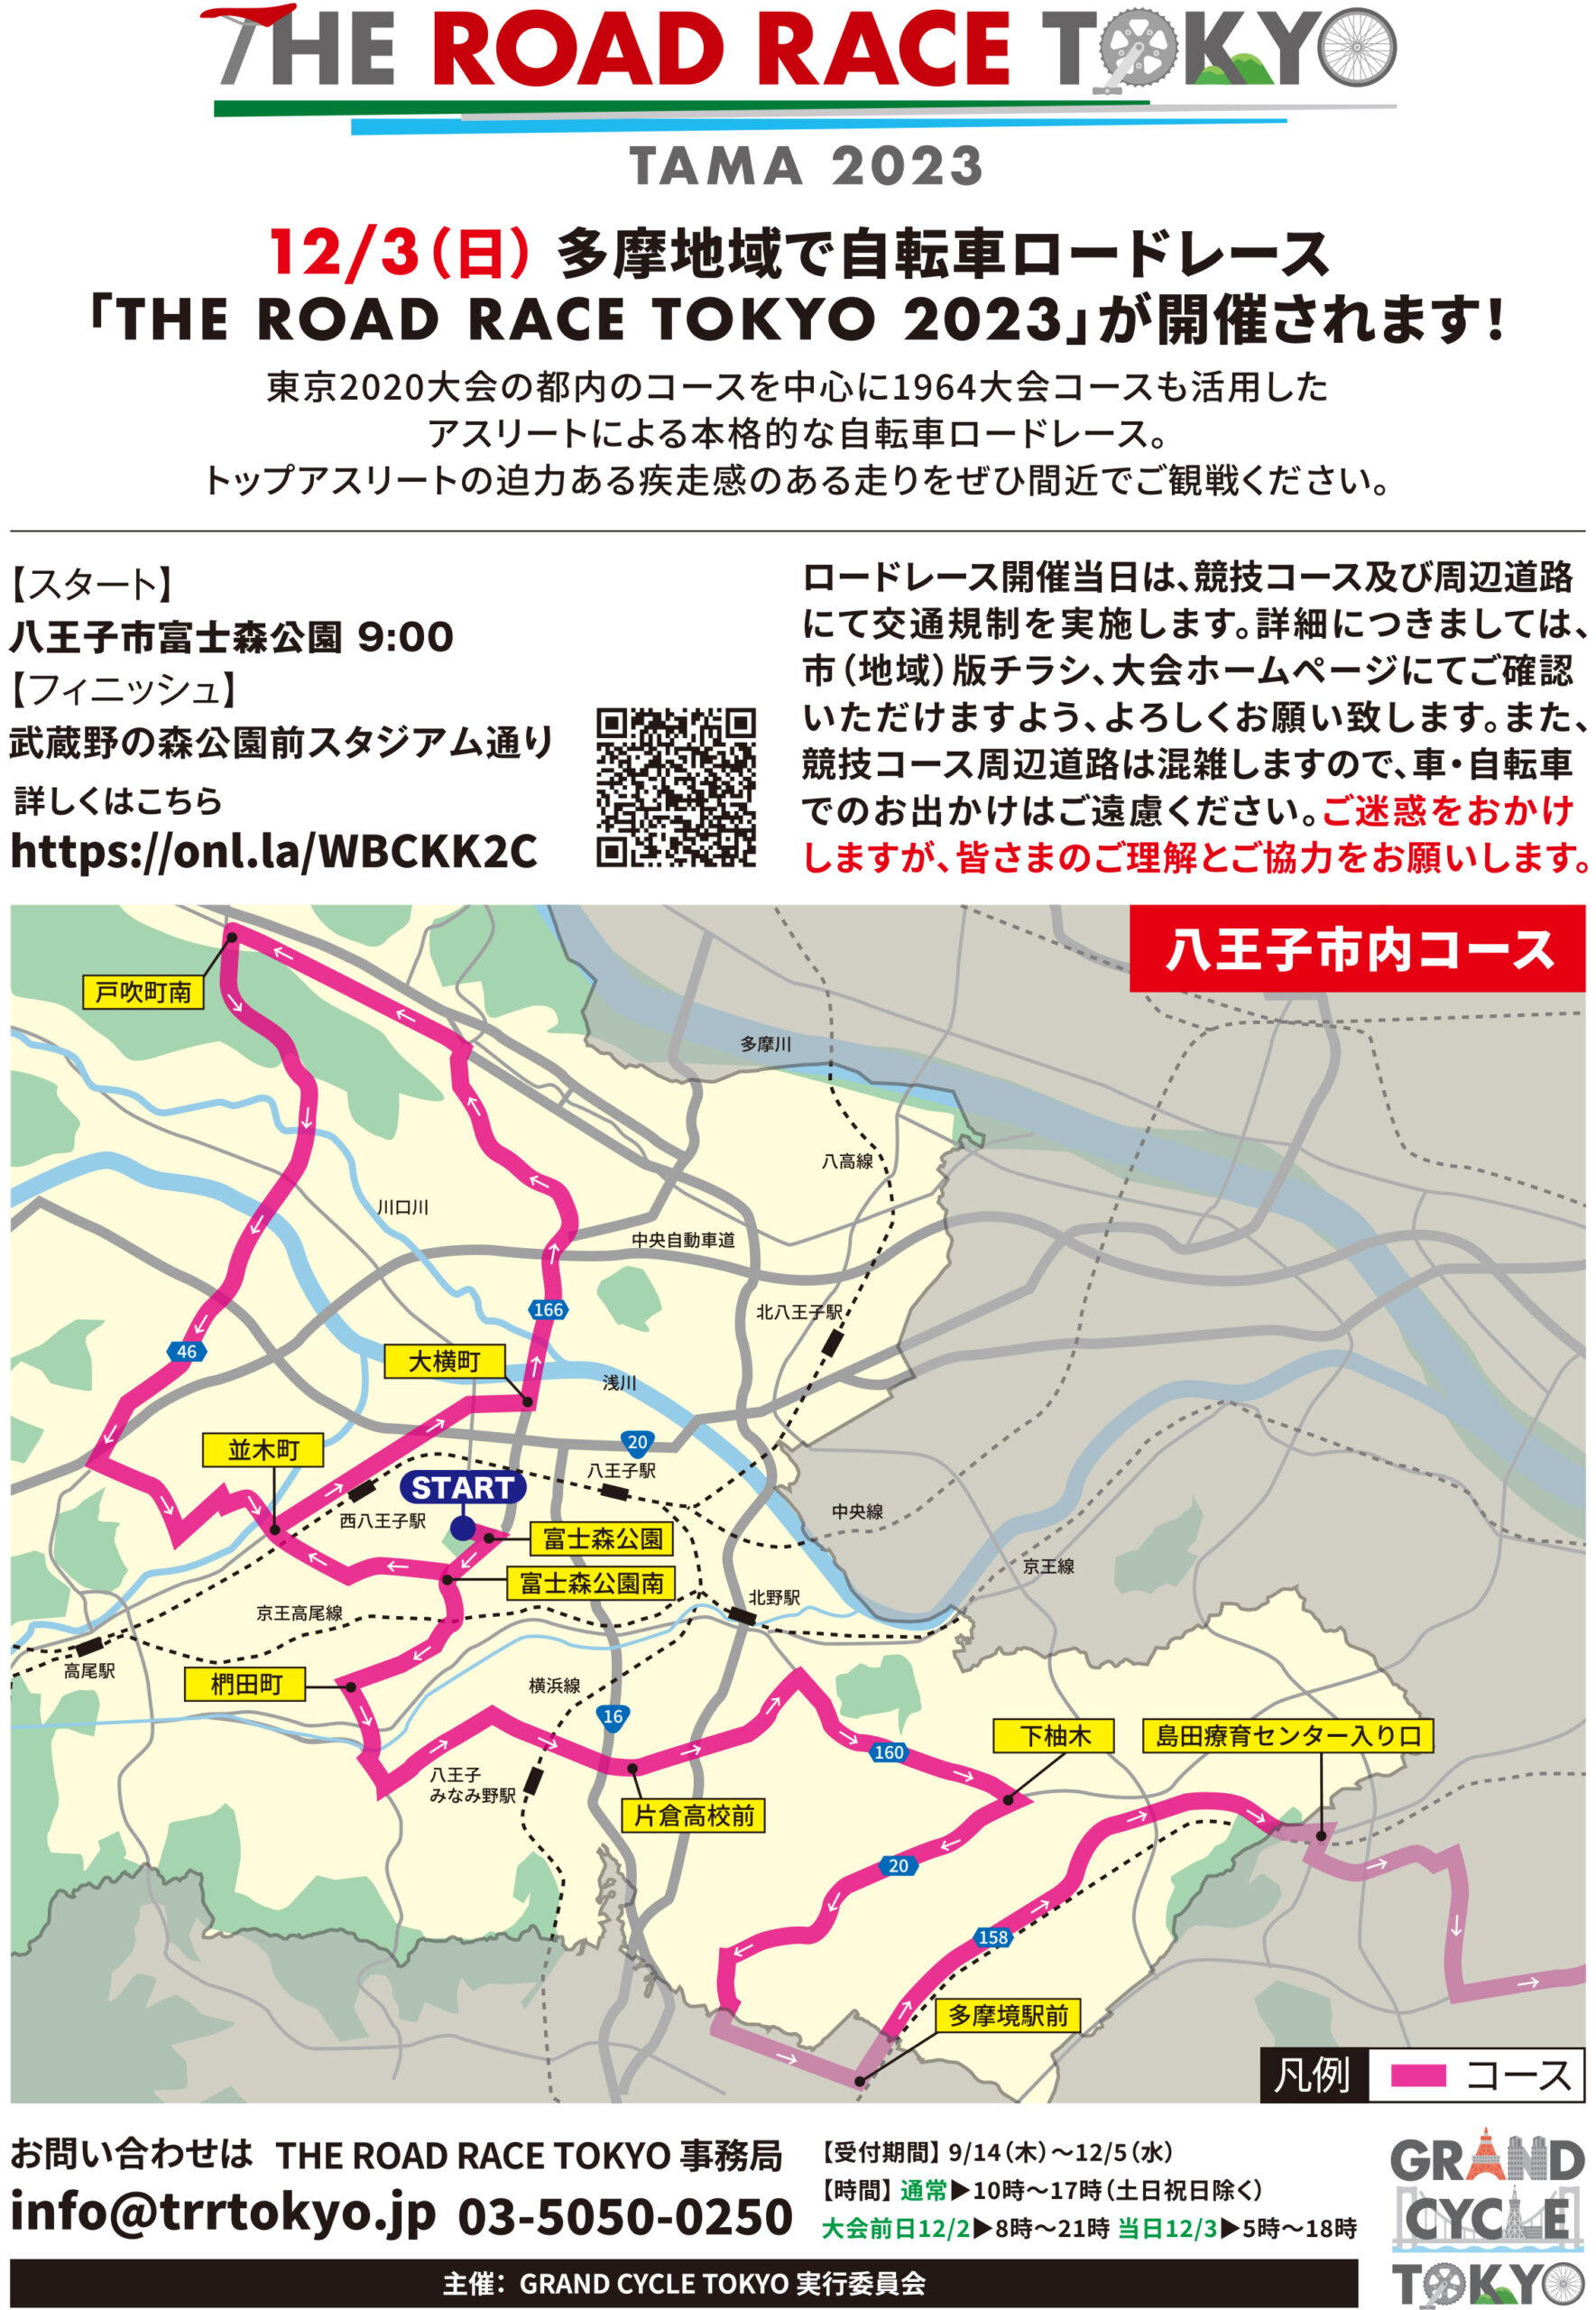 多摩地域で自転車ロードレース「THE ROAD RACE TOKYO 2023」